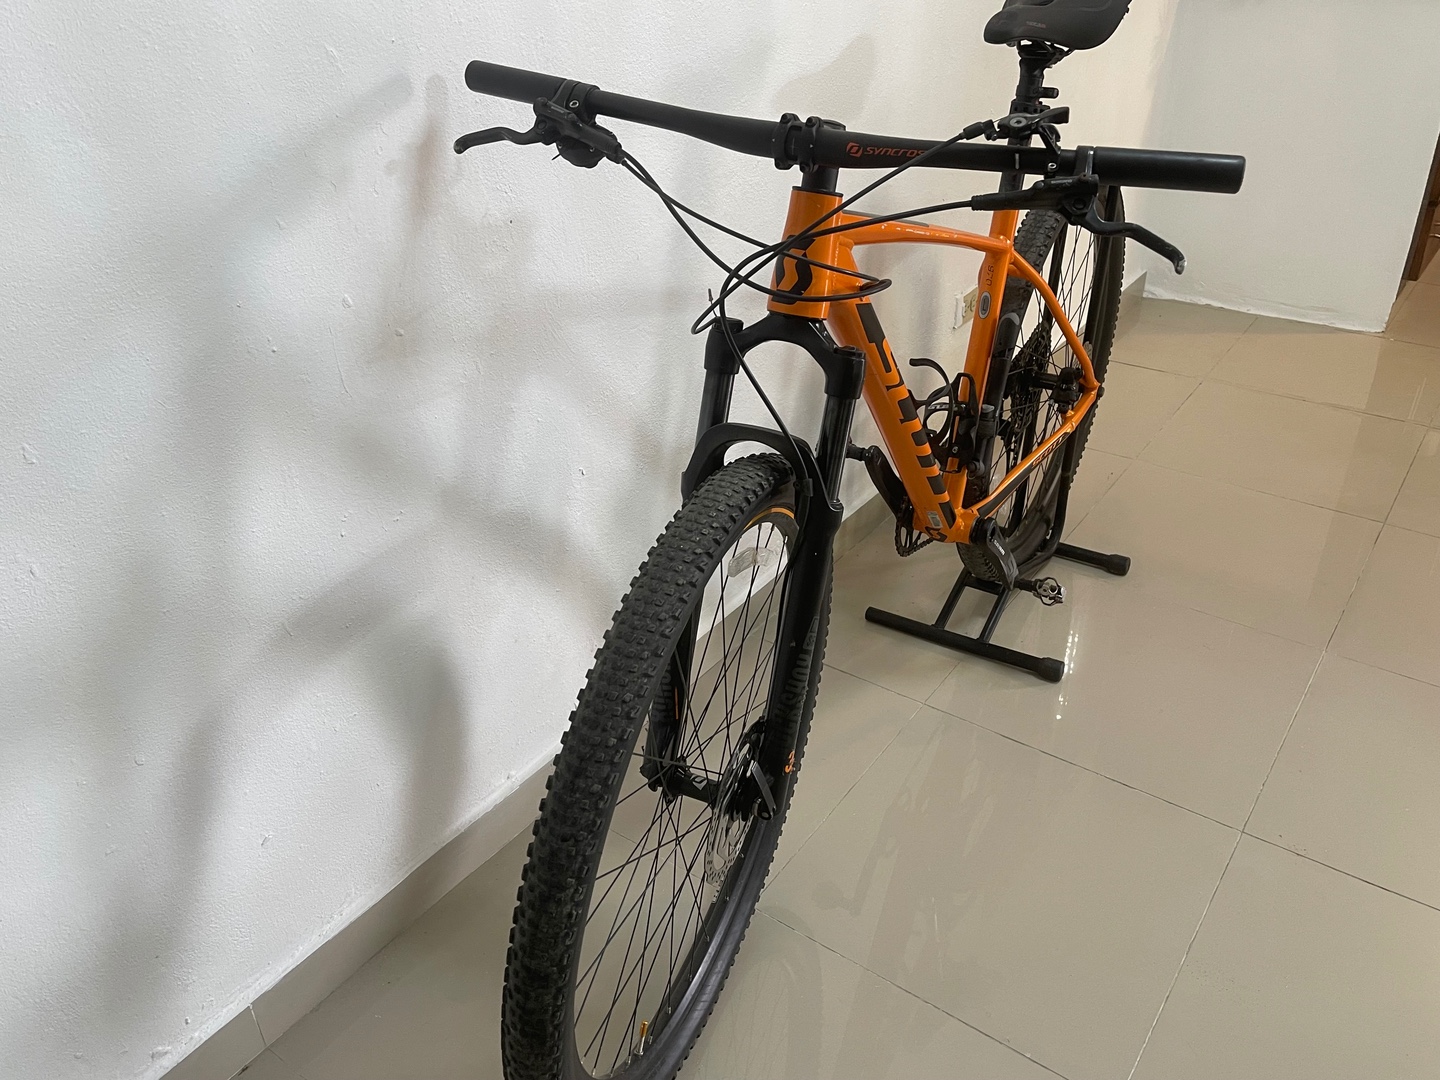 bicicletas y accesorios - Bicicleta Schott 970 color Naranja en Venta.  0